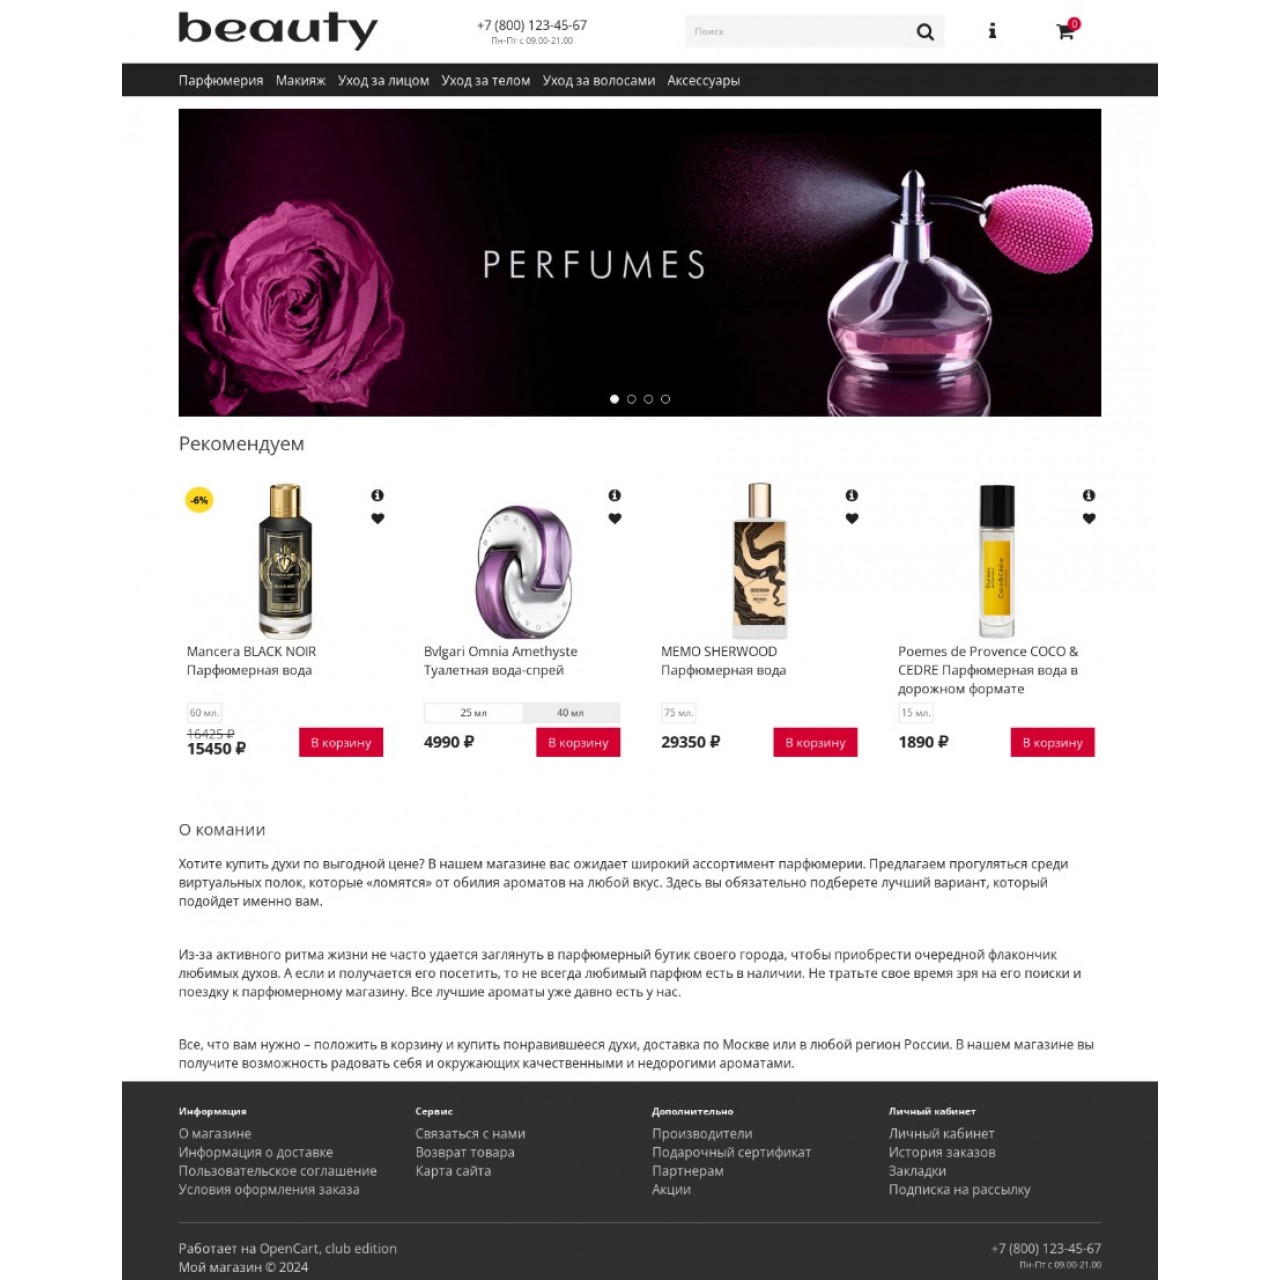 Beauty - шаблон магазина косметики и парфюмерии из категории Шаблоны для CMS OpenCart (ОпенКарт)